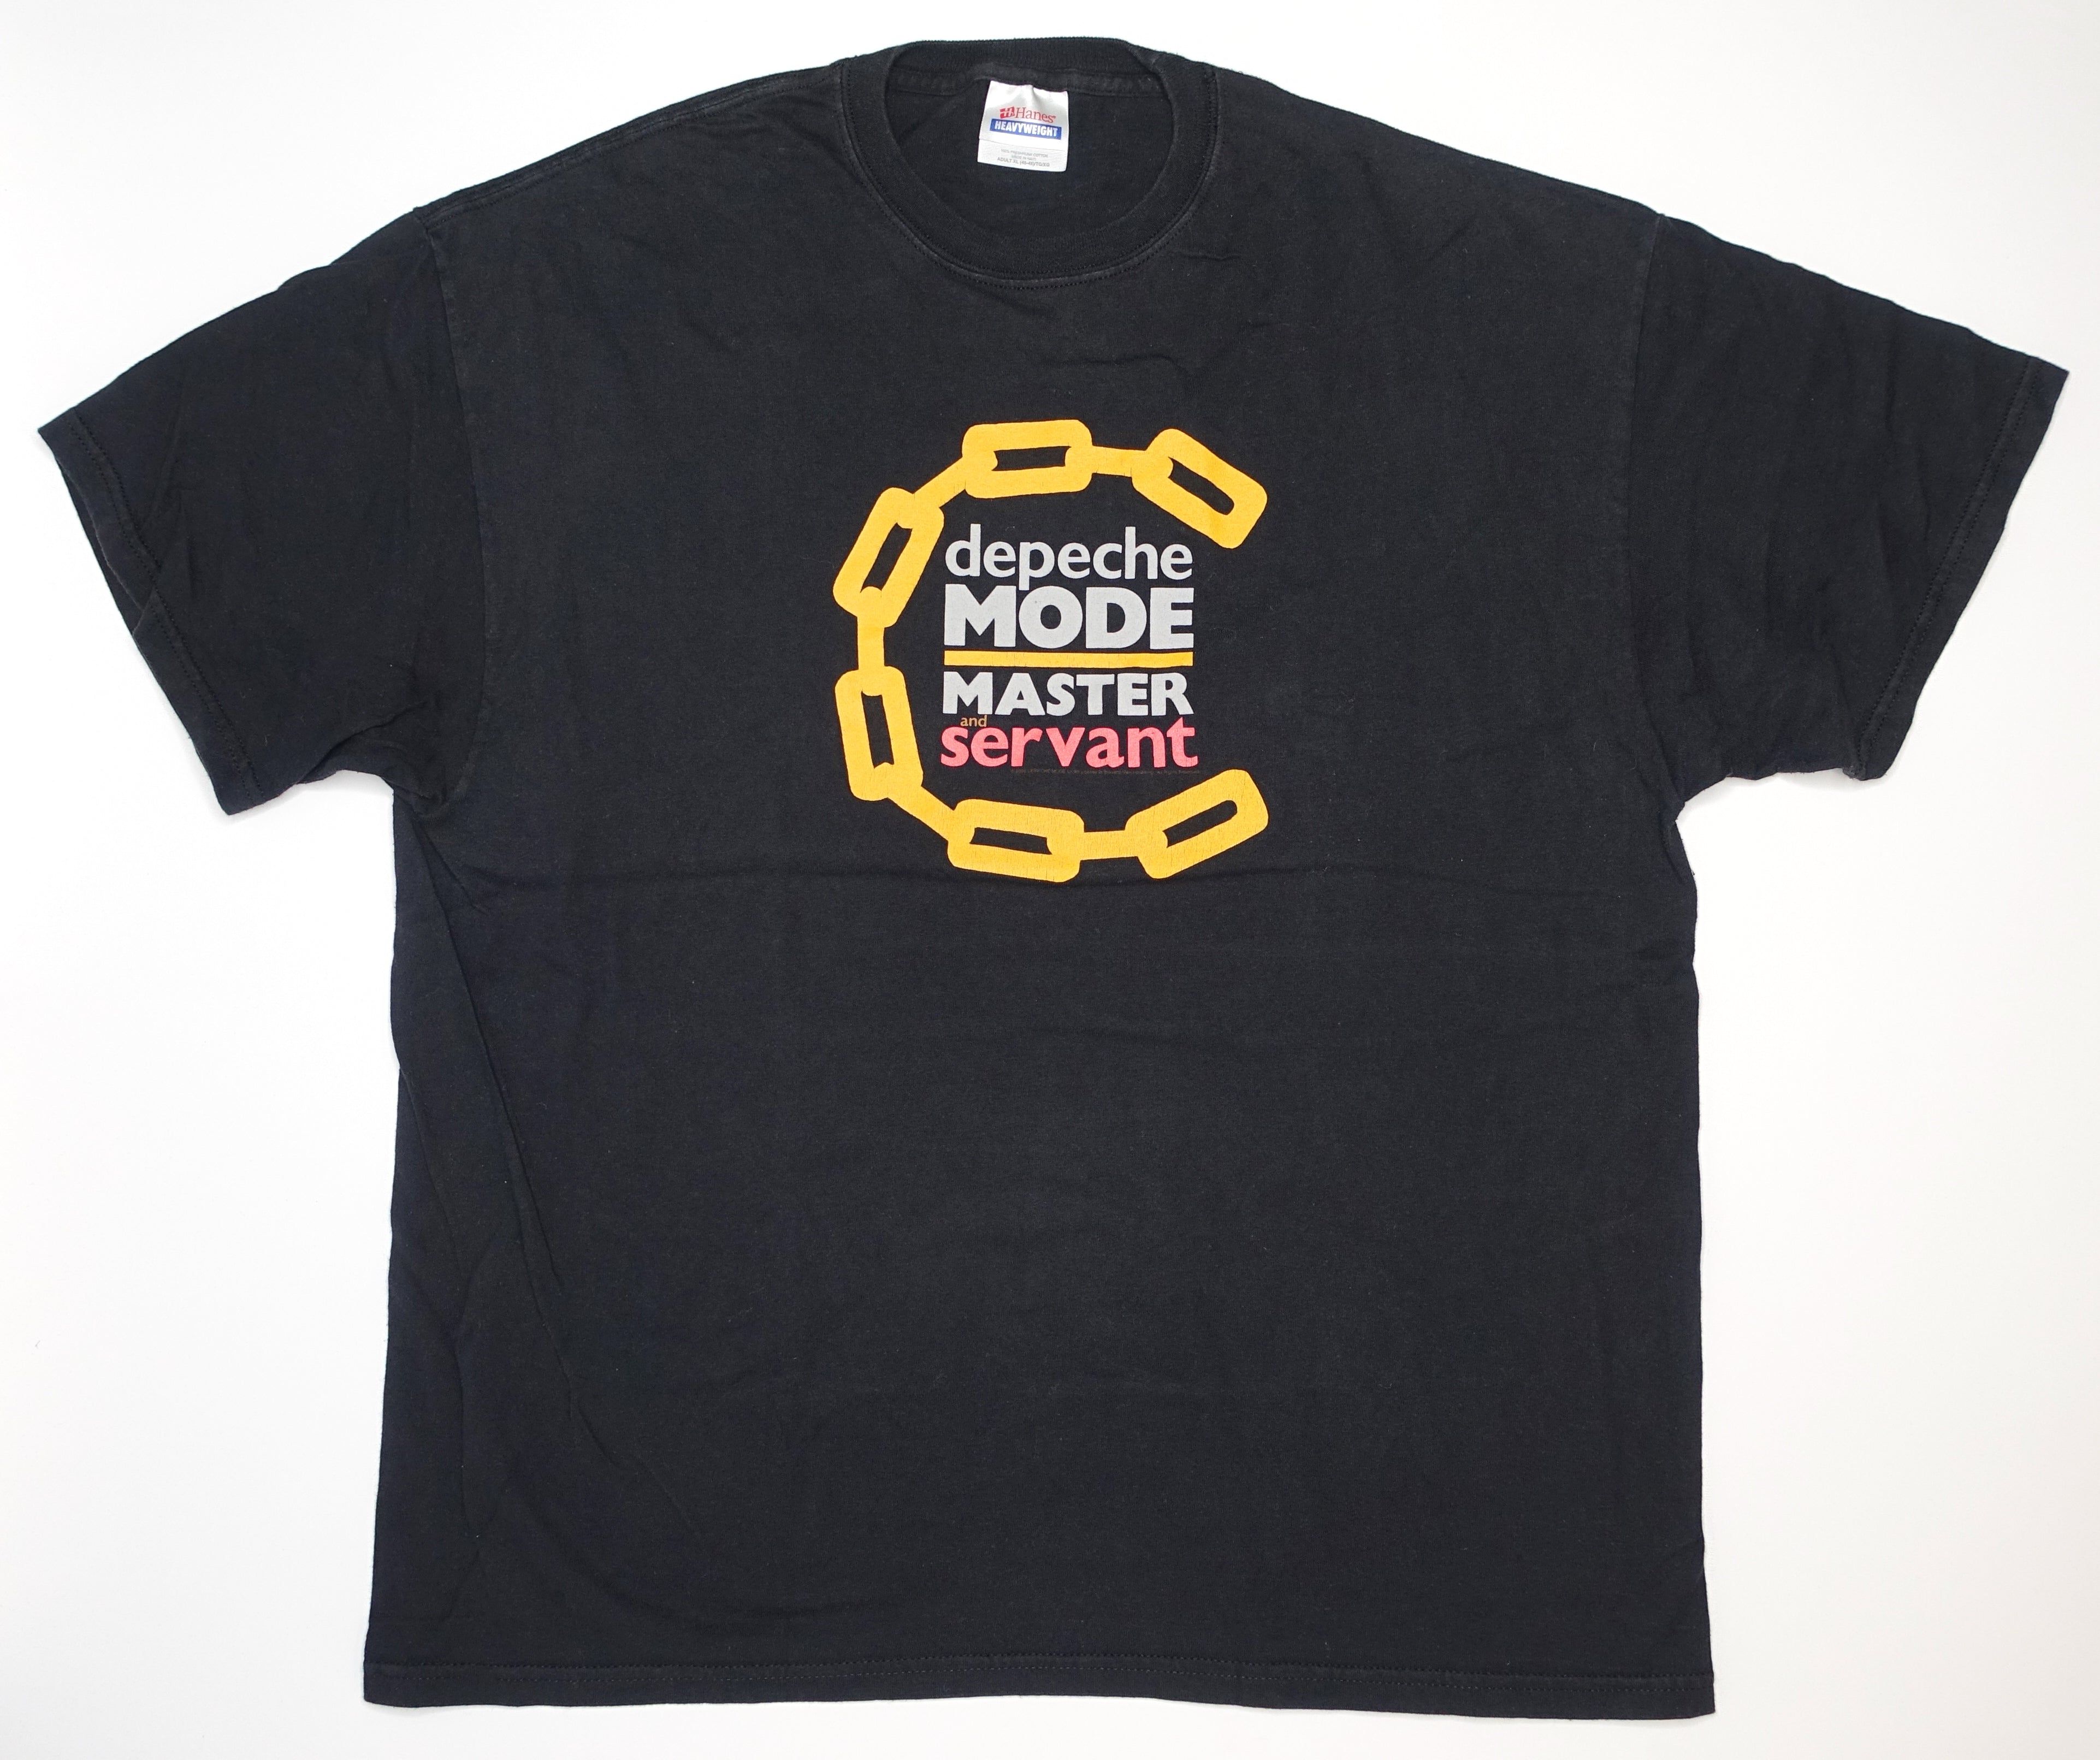 Depeche Mode – Master and Servant ©2005 Shirt Size XL